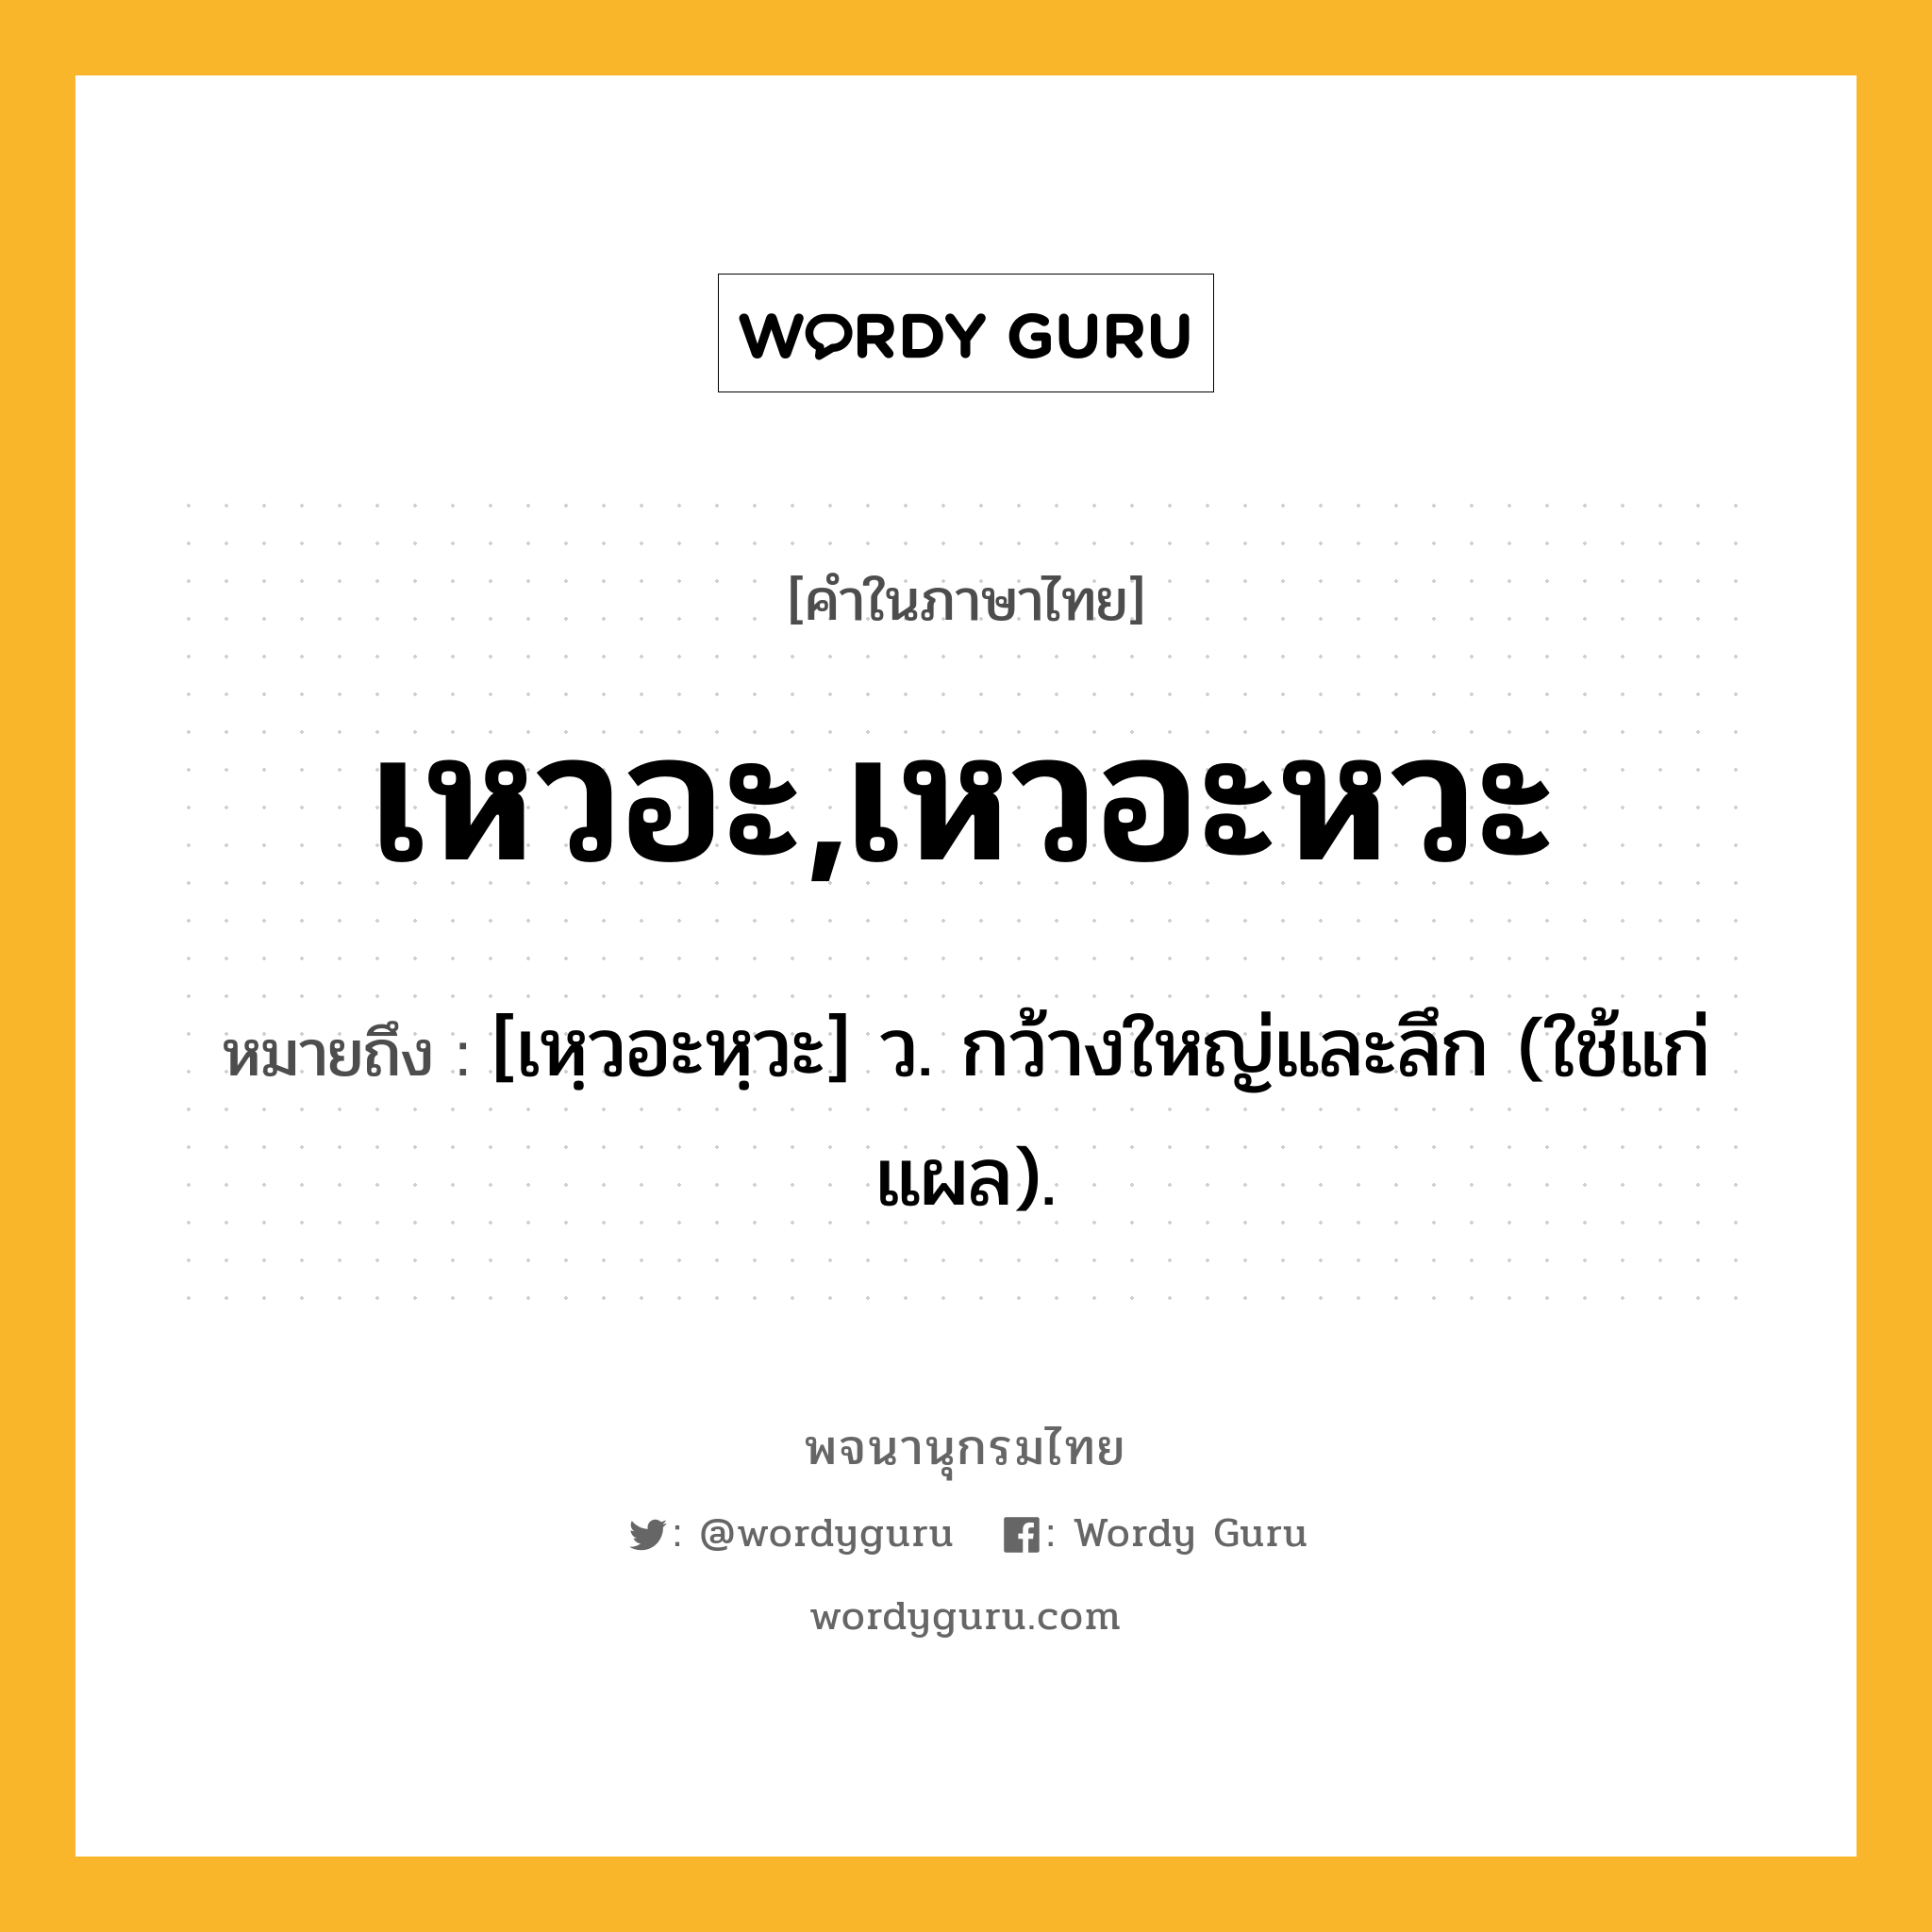 เหวอะ,เหวอะหวะ ความหมาย หมายถึงอะไร?, คำในภาษาไทย เหวอะ,เหวอะหวะ หมายถึง [เหฺวอะหฺวะ] ว. กว้างใหญ่และลึก (ใช้แก่แผล).